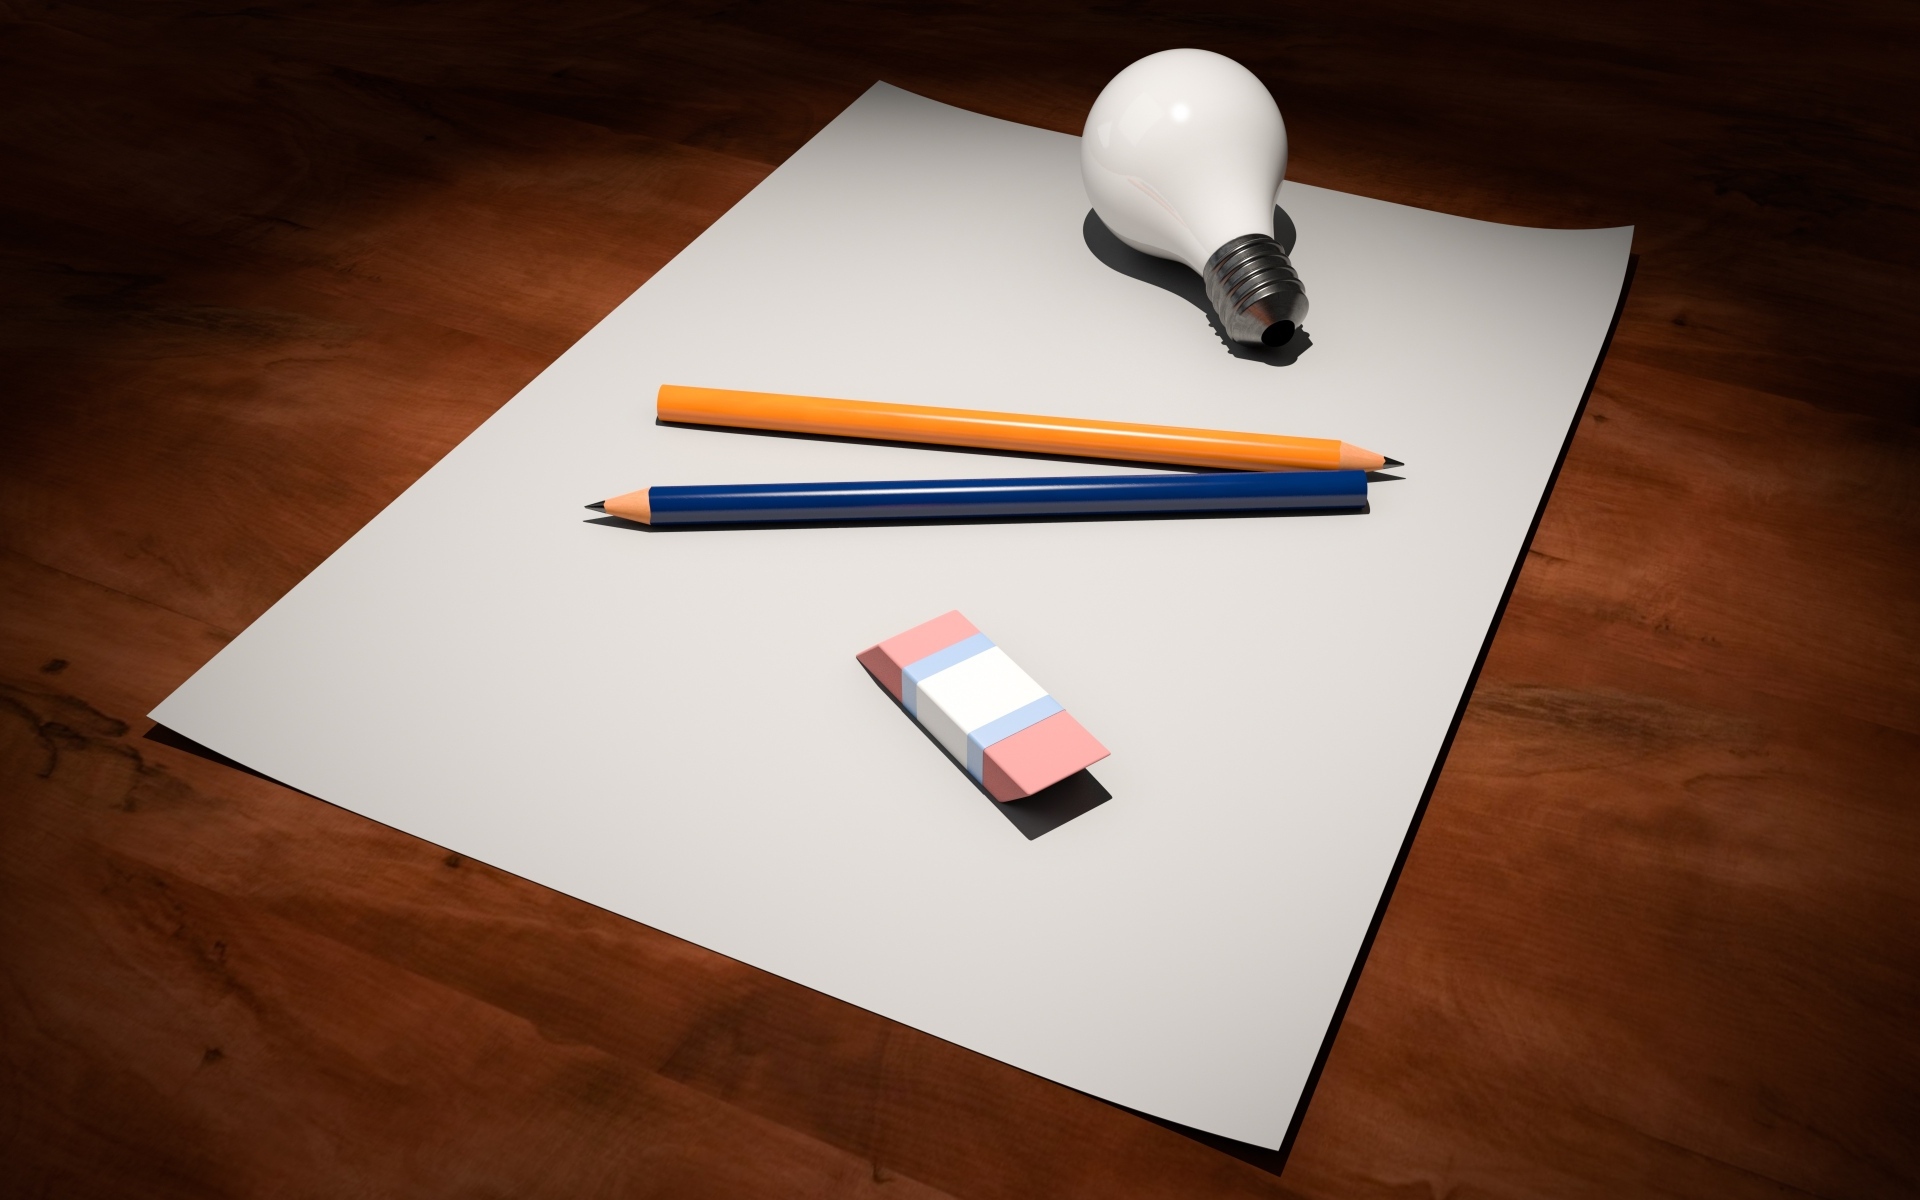 Лист бумаги, карандаши, ластик и лампочка на столе